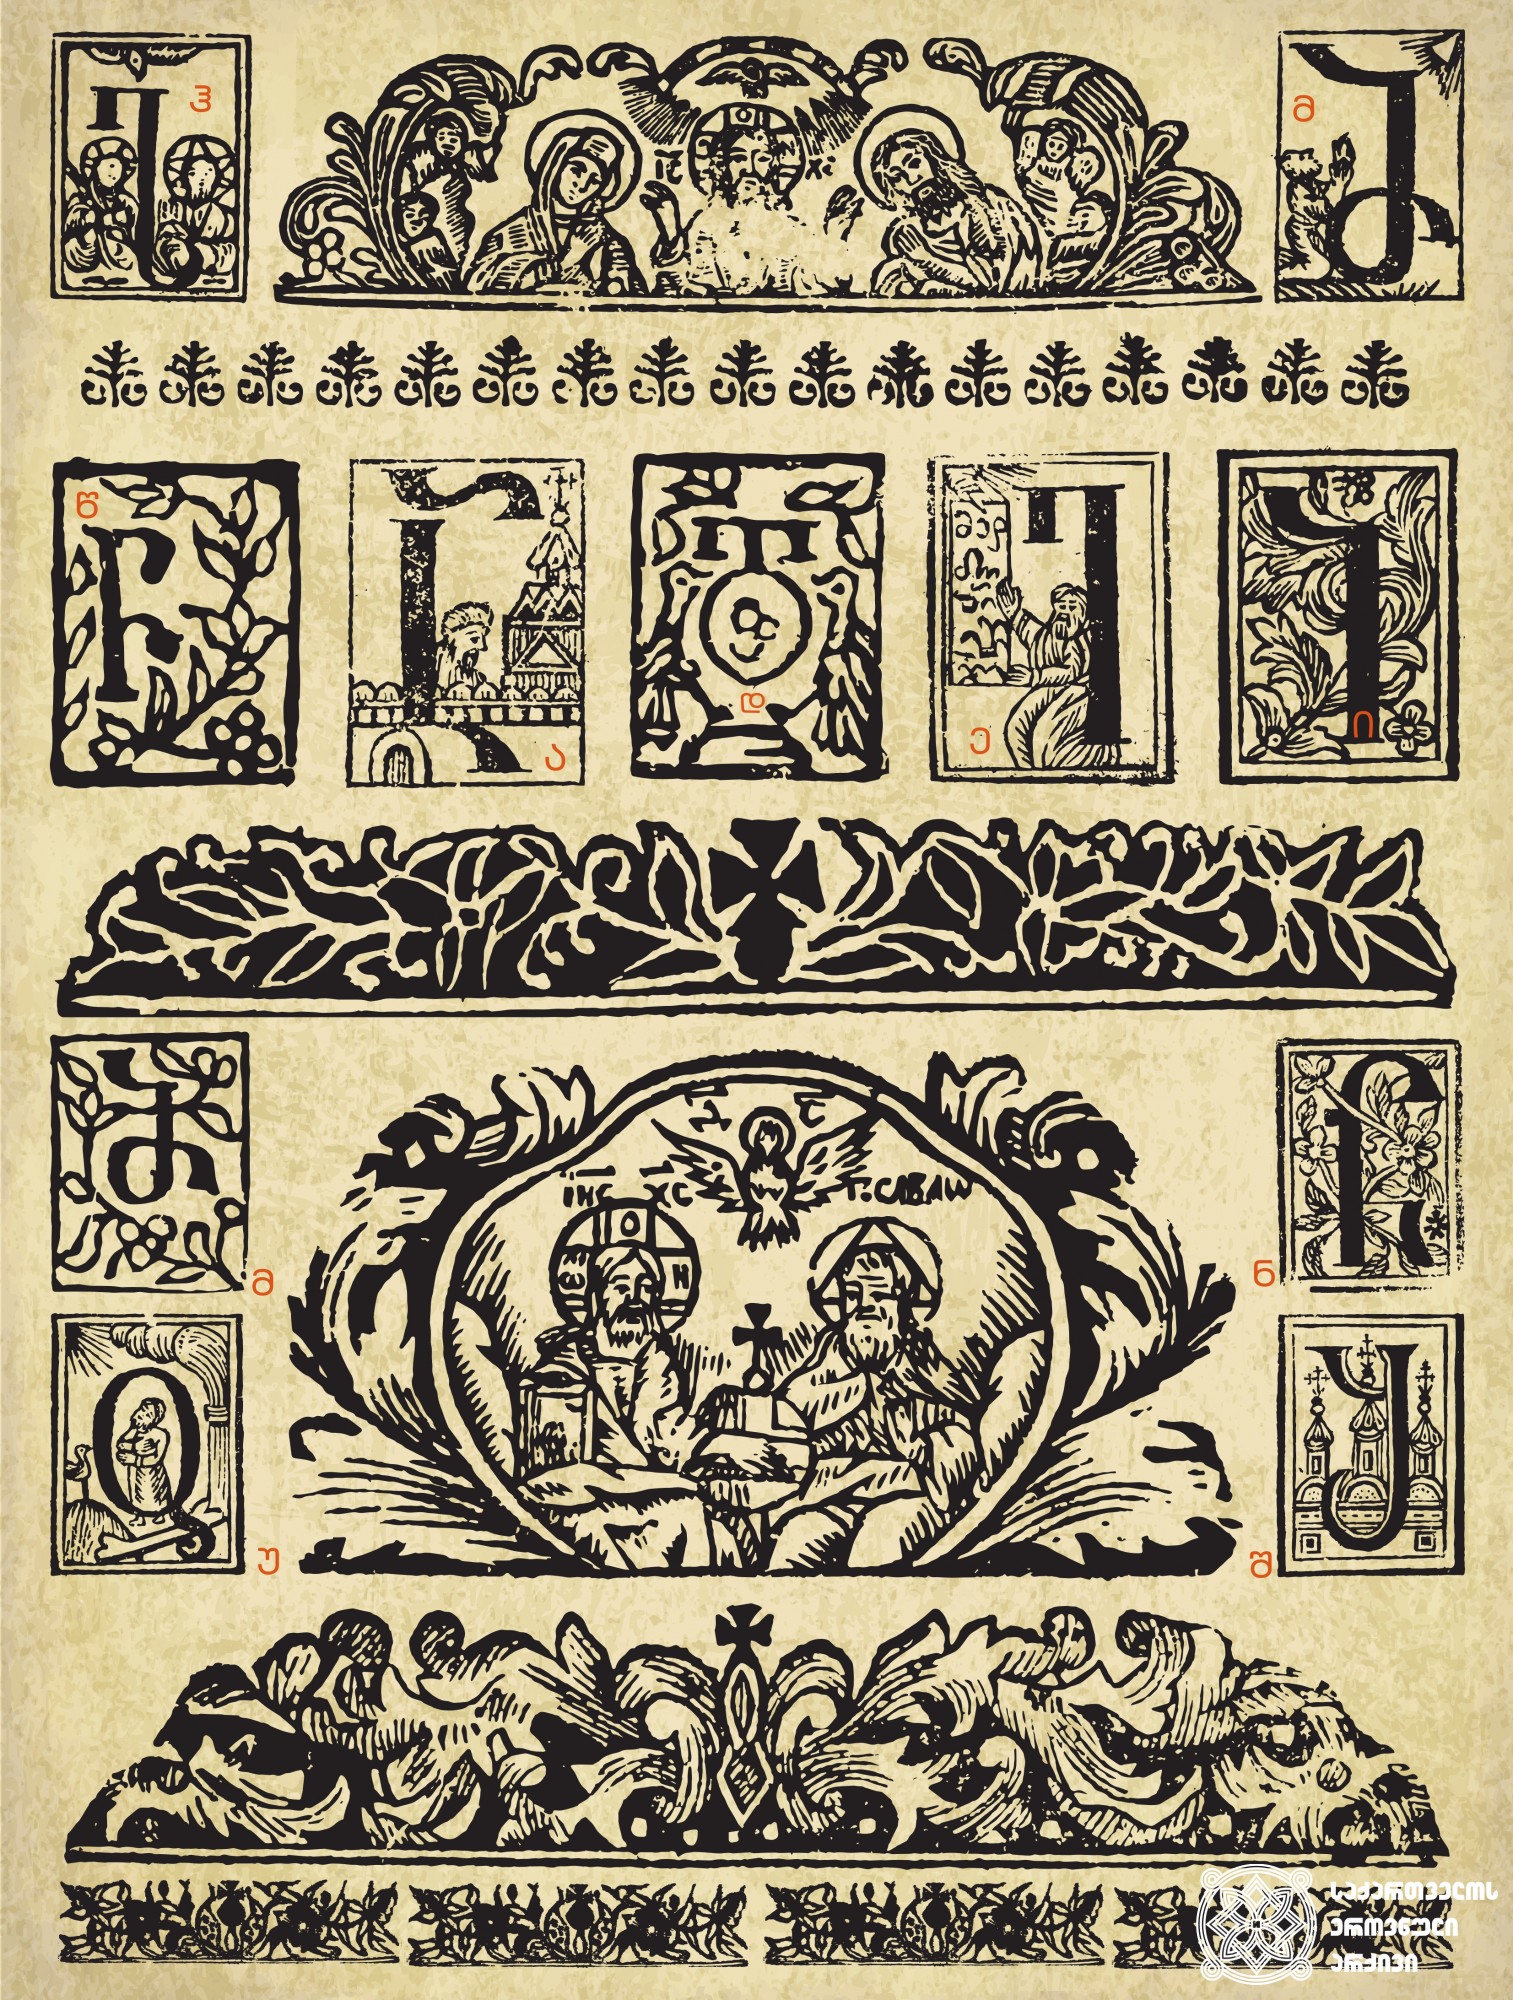 ჟამნი <br>
ქუთაისი, 1808. <br> თავადის,  სახლთუხუცის - ზურაბ წერეთელის სტამბა 
მესტამბე: რაზმაძე რომანოზ ზუბაშვილი
სტამბის ზედამხედველი: არქიმანდრიტი ზაქარია
<br>
Horologion <br>
Kutaisi, 1808. Printing House of Tavadi, Sakhltukhutsi – Zurab Tsereteli
Printer: Razmadze Romanoz Zubashvili. Printing House manager: Archimandrite Zakaria